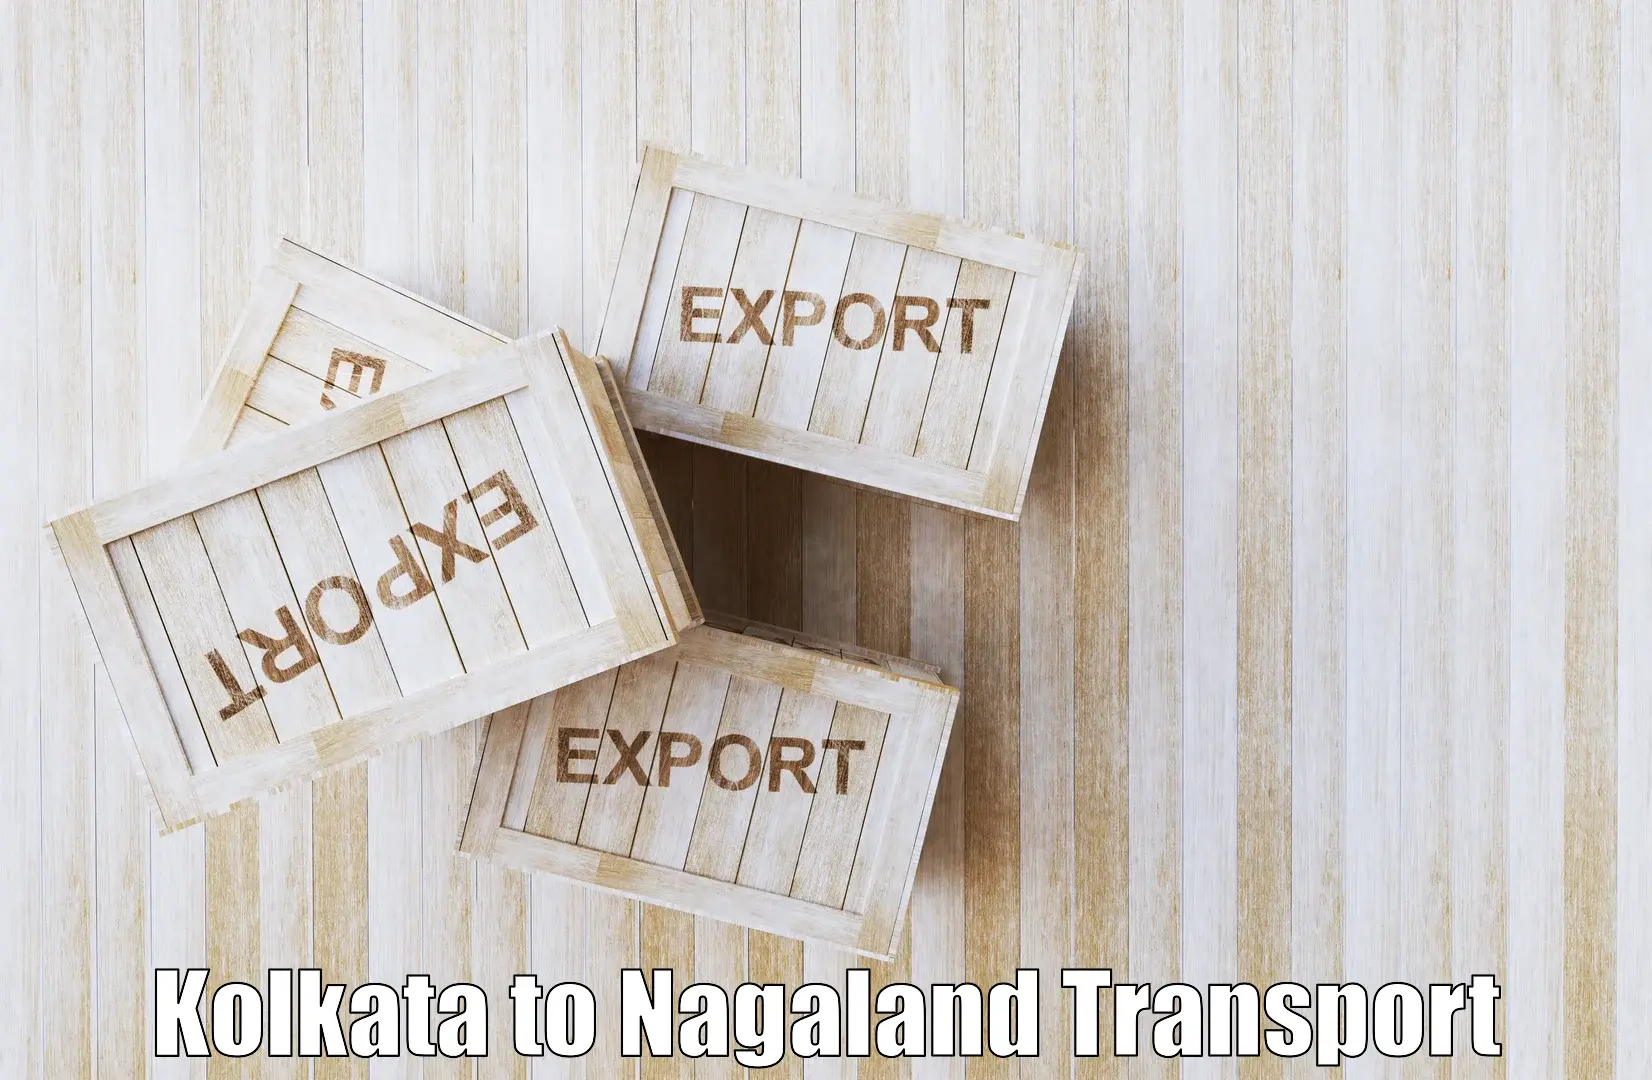 Shipping partner Kolkata to Nagaland